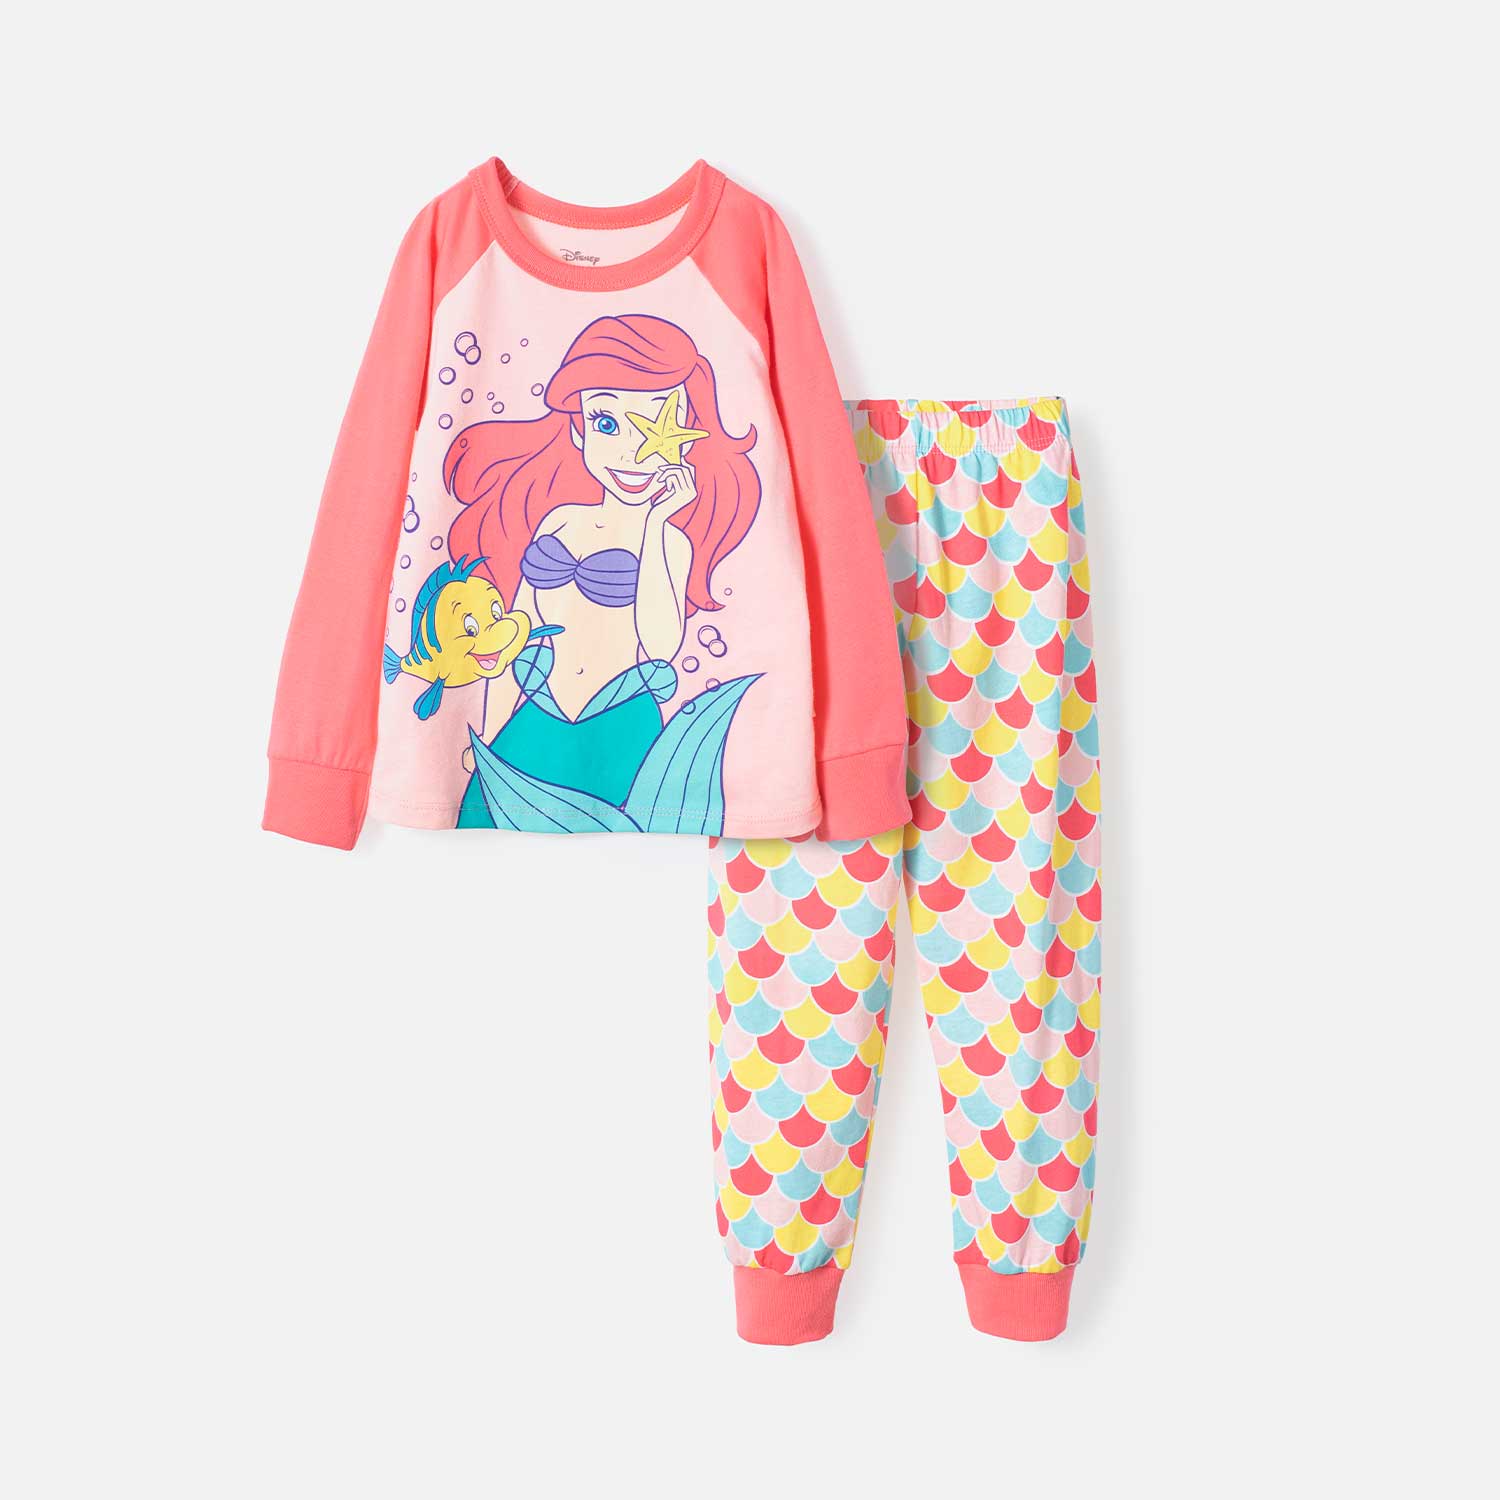 Pijama de La Sirenita multicolor con pantalón 2T a 5T